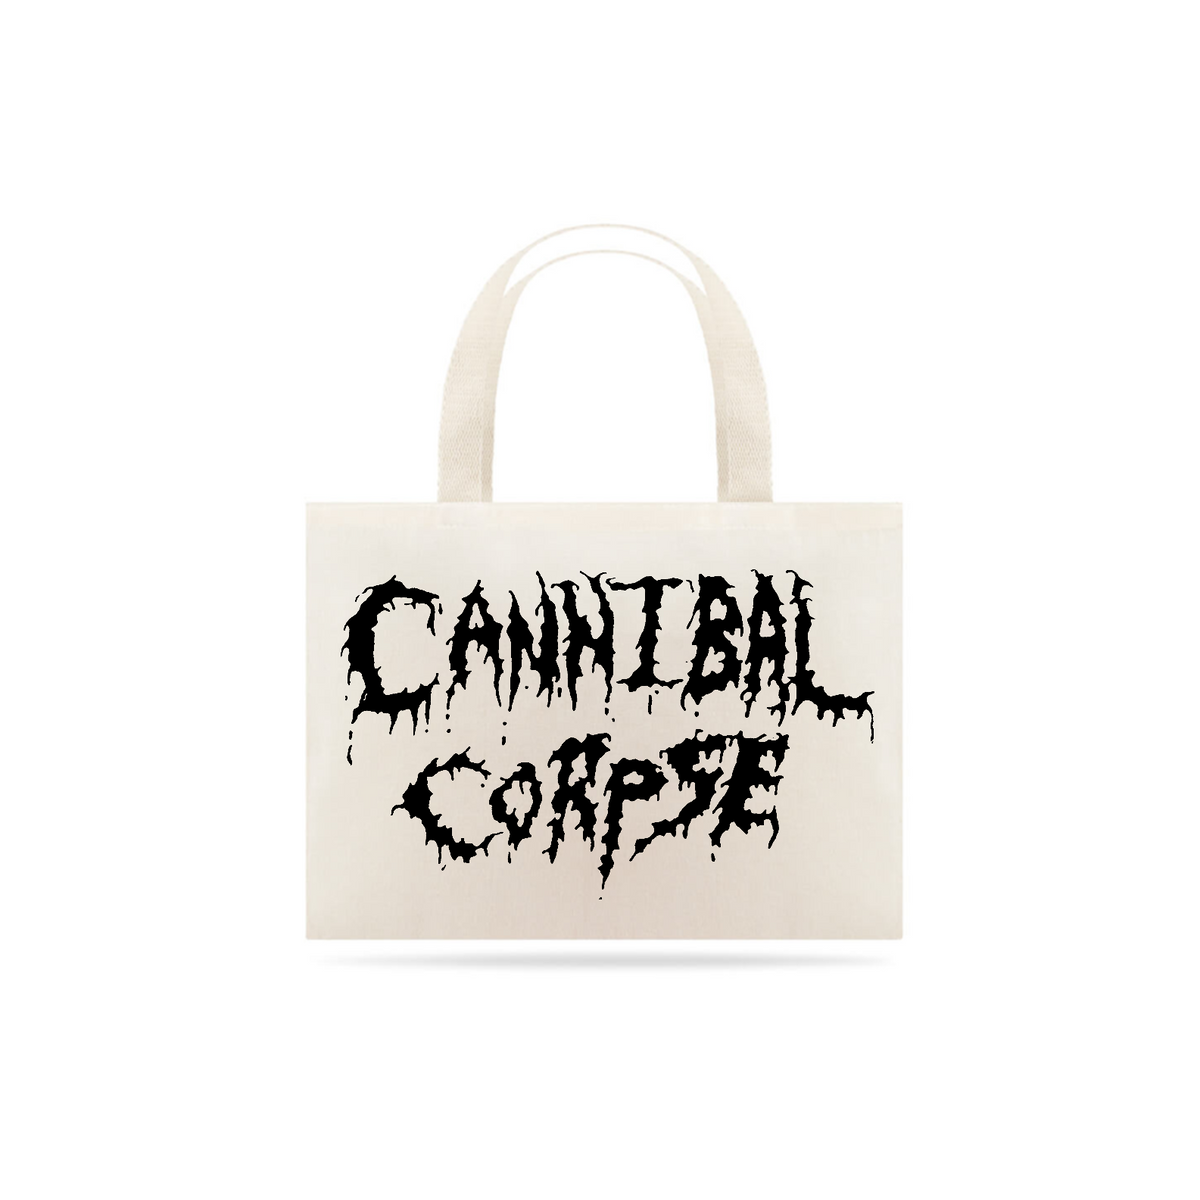 Nome do produto: Cannibal Corpse